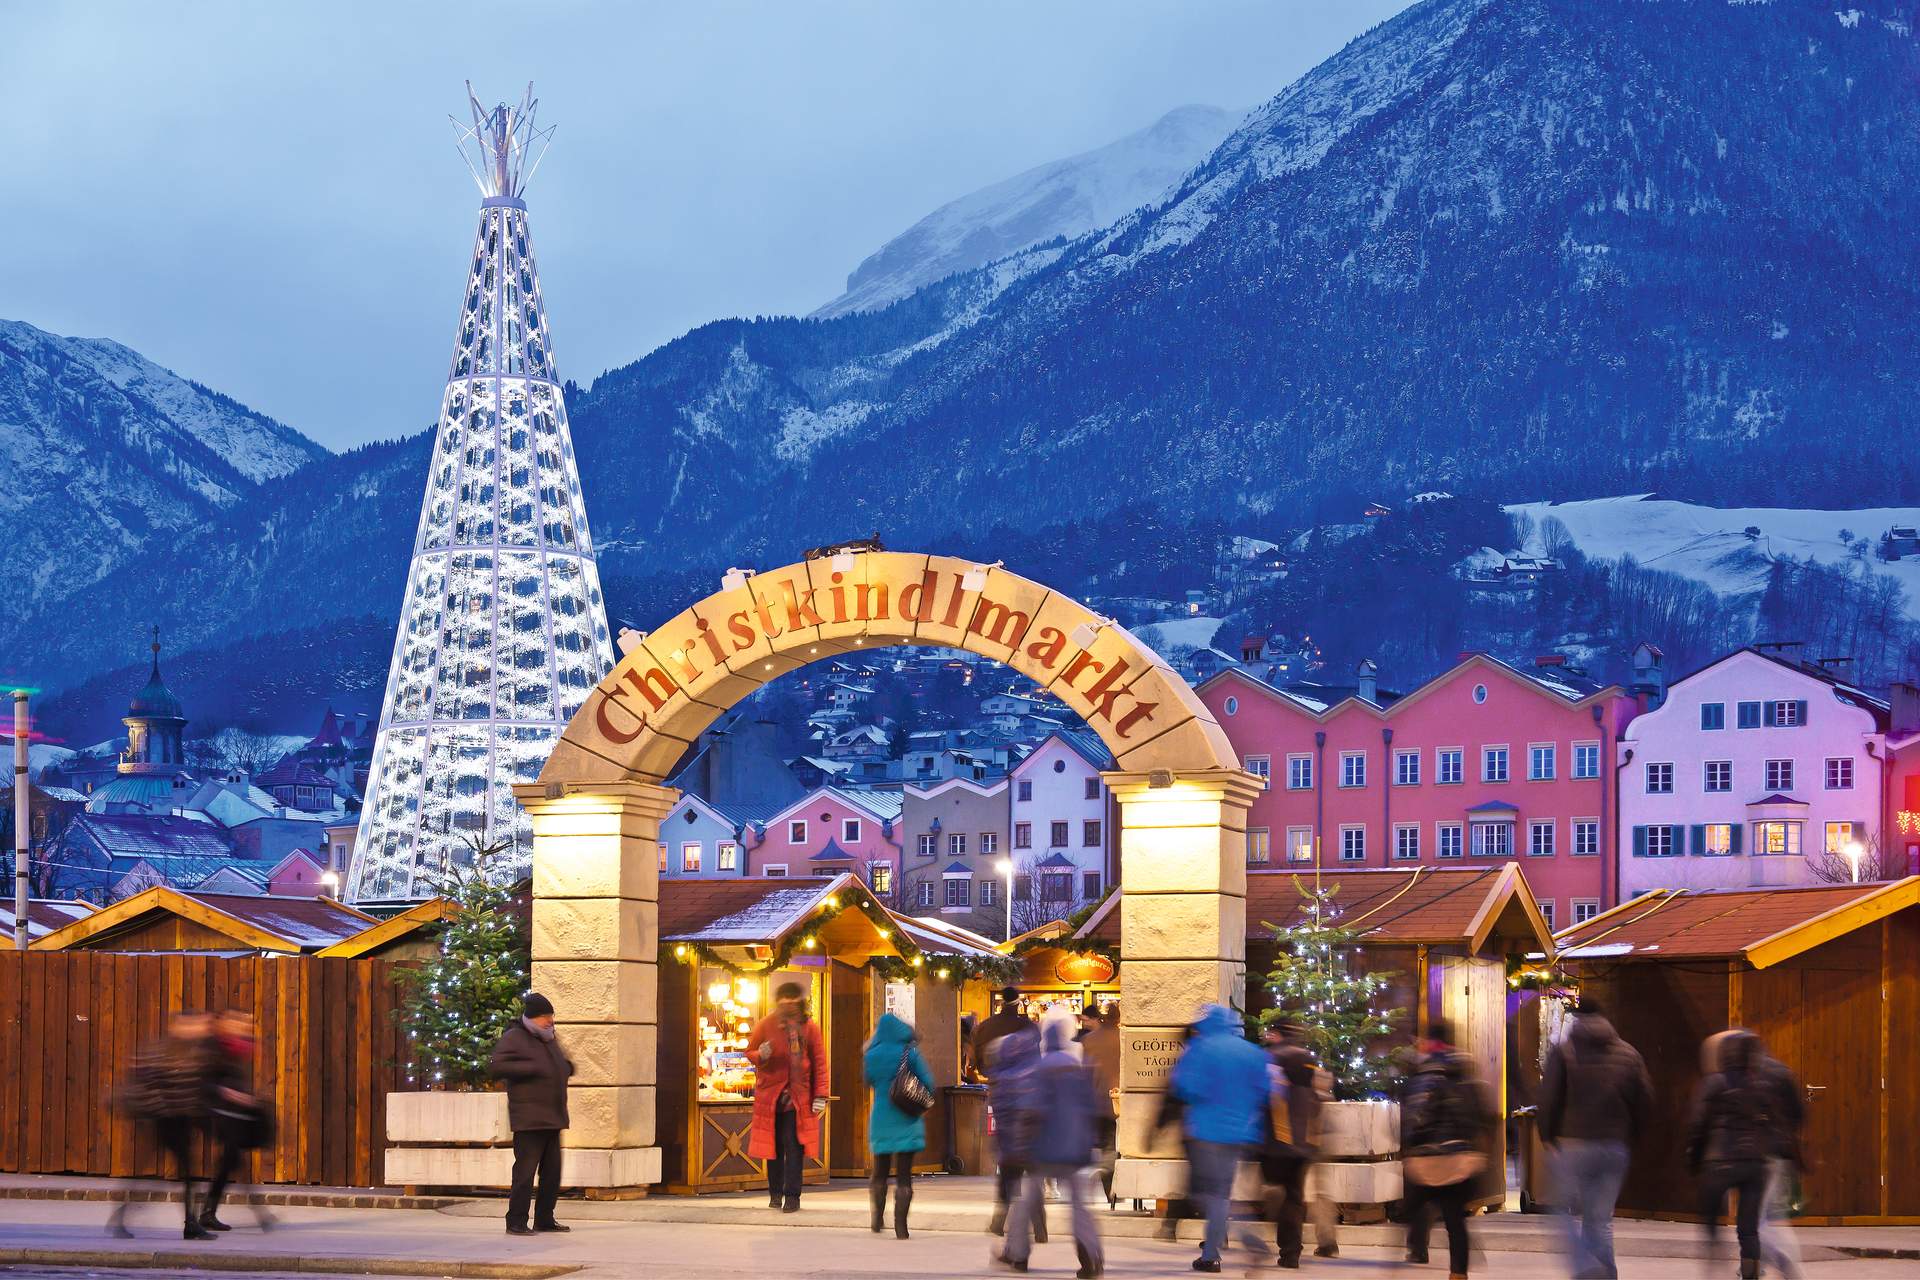 Innsbruck: Weihnachtsmarkt